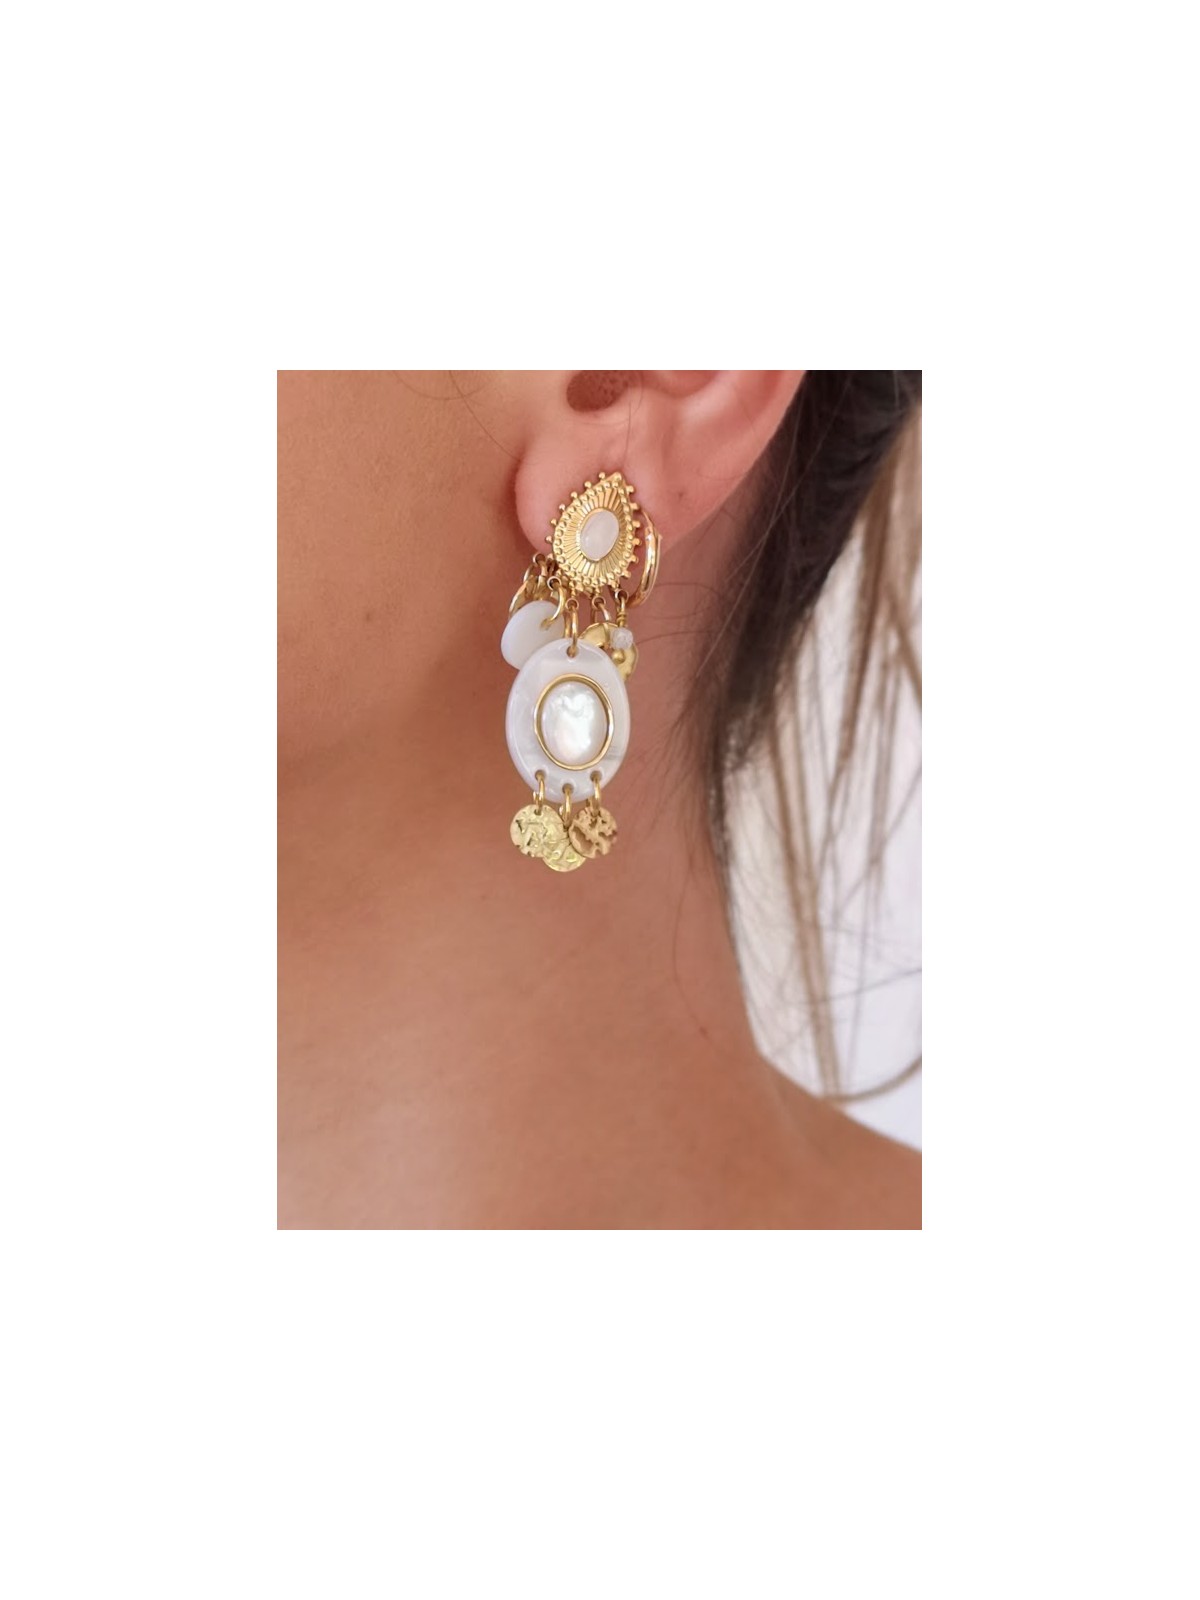 Boucles d'oreilles dorée et blanches l 1 vue rapprochée l Tilleulmenthe mode boutique de vêtements femme en ligne